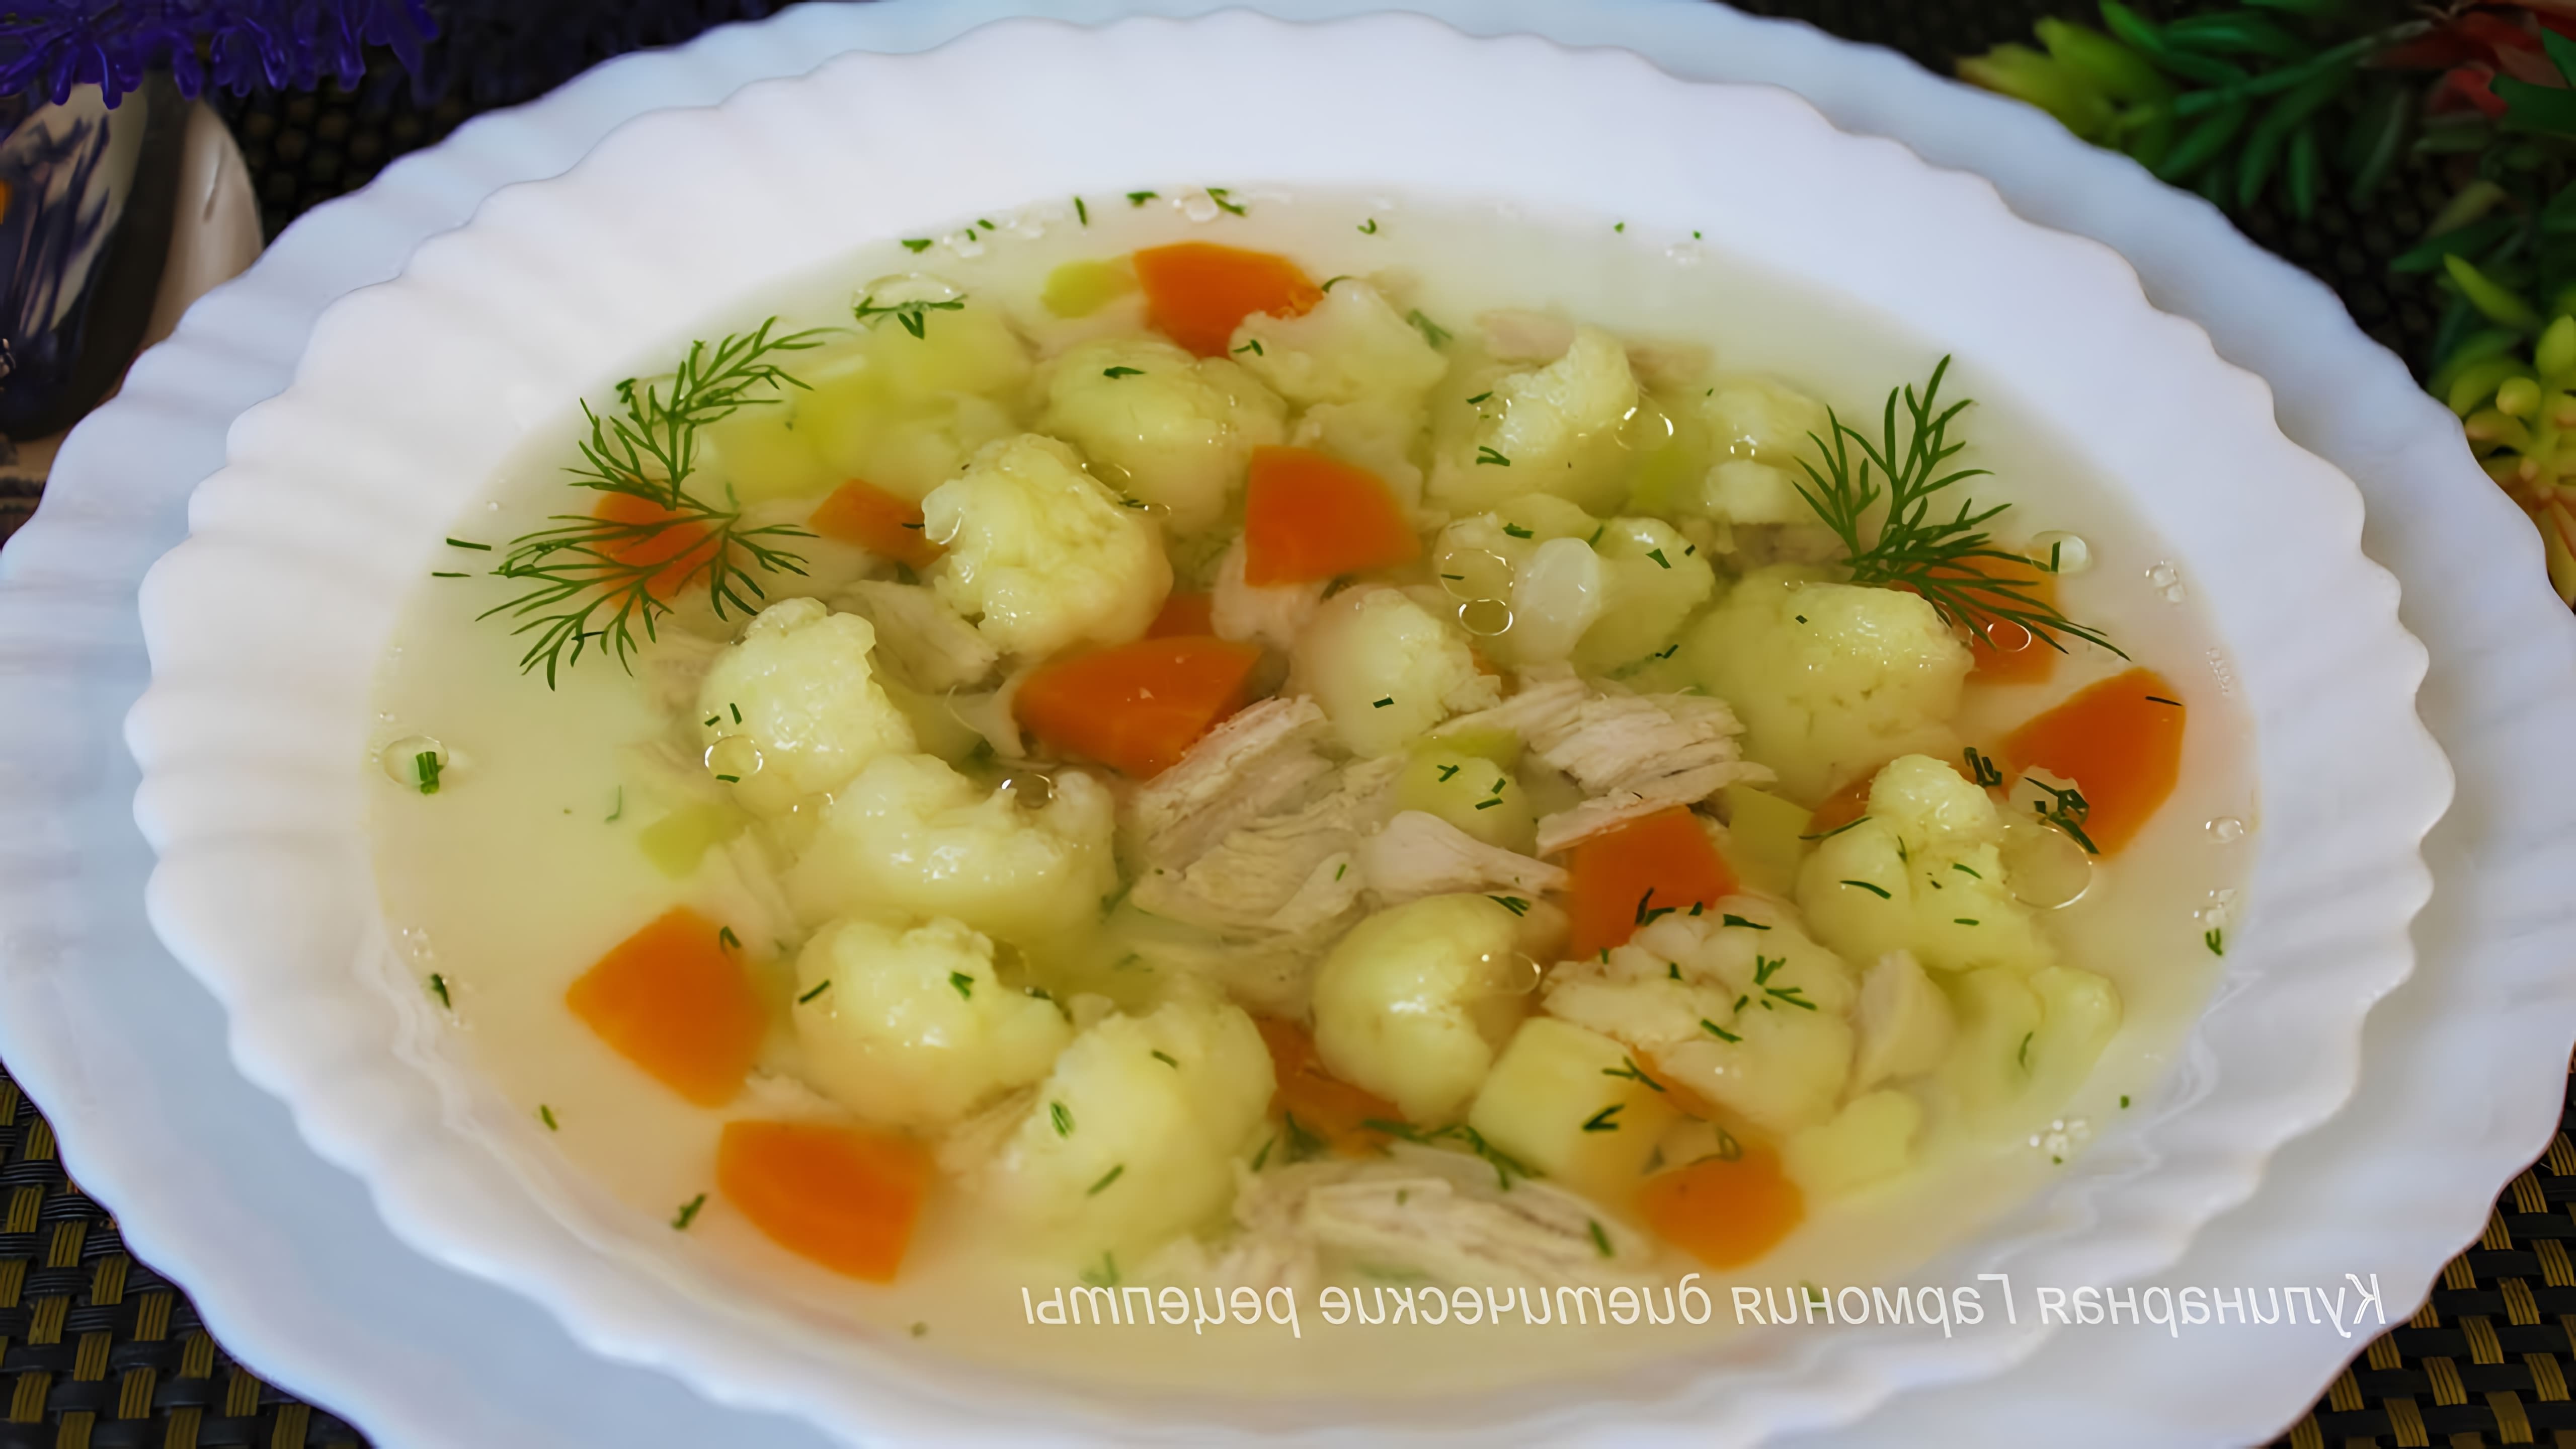 В этом видео демонстрируется процесс приготовления диетического супа с куриным филе и цветной капустой